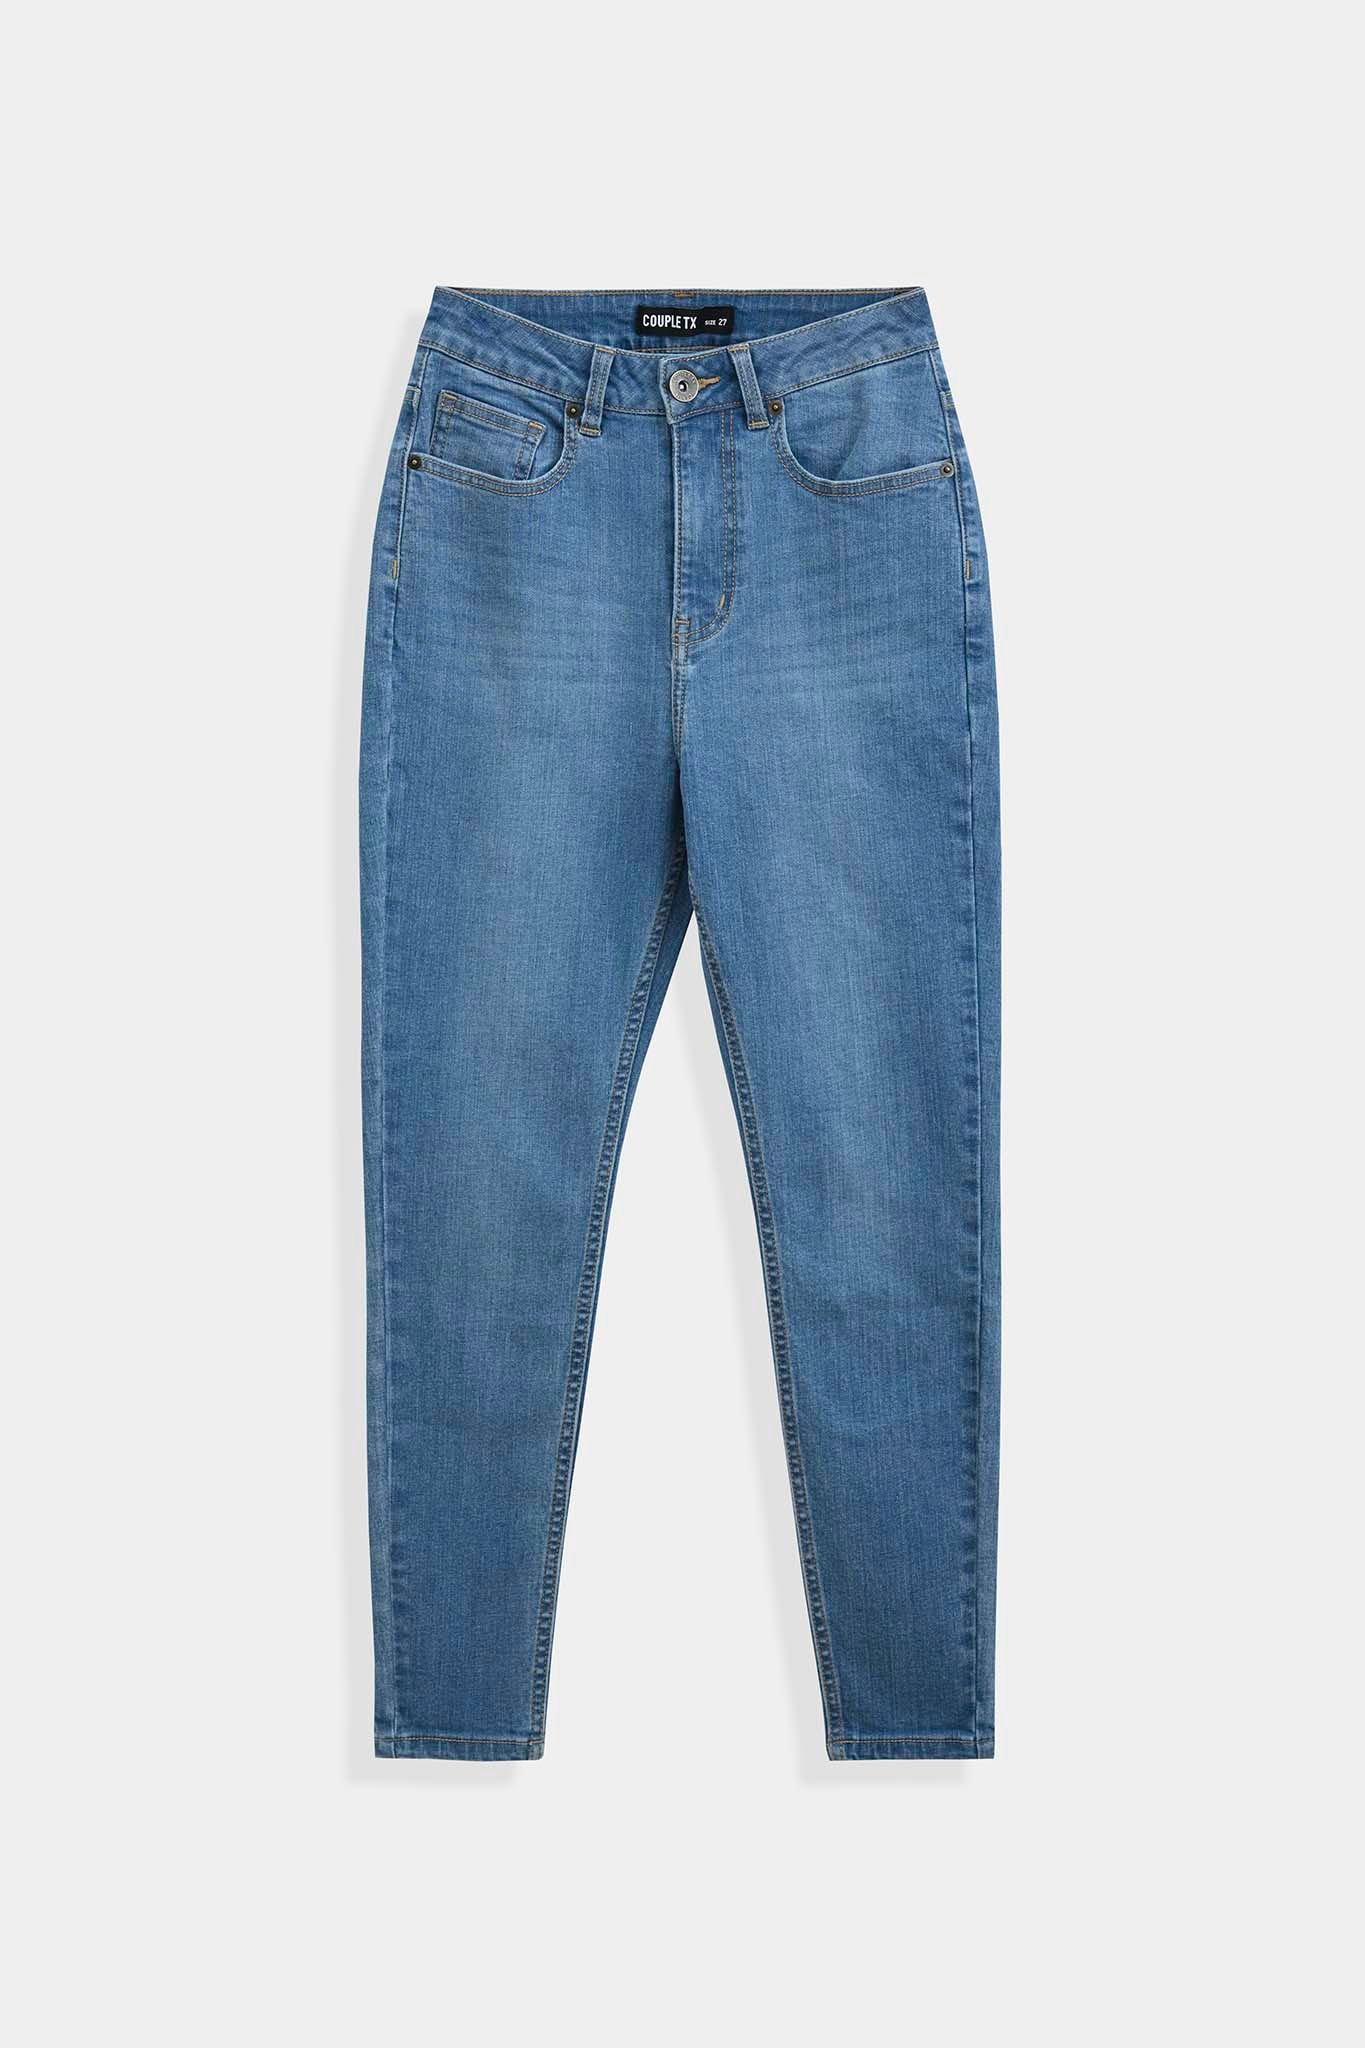 Quần Jean Nữ Skinny Jeans Wash WJE 2016 - 